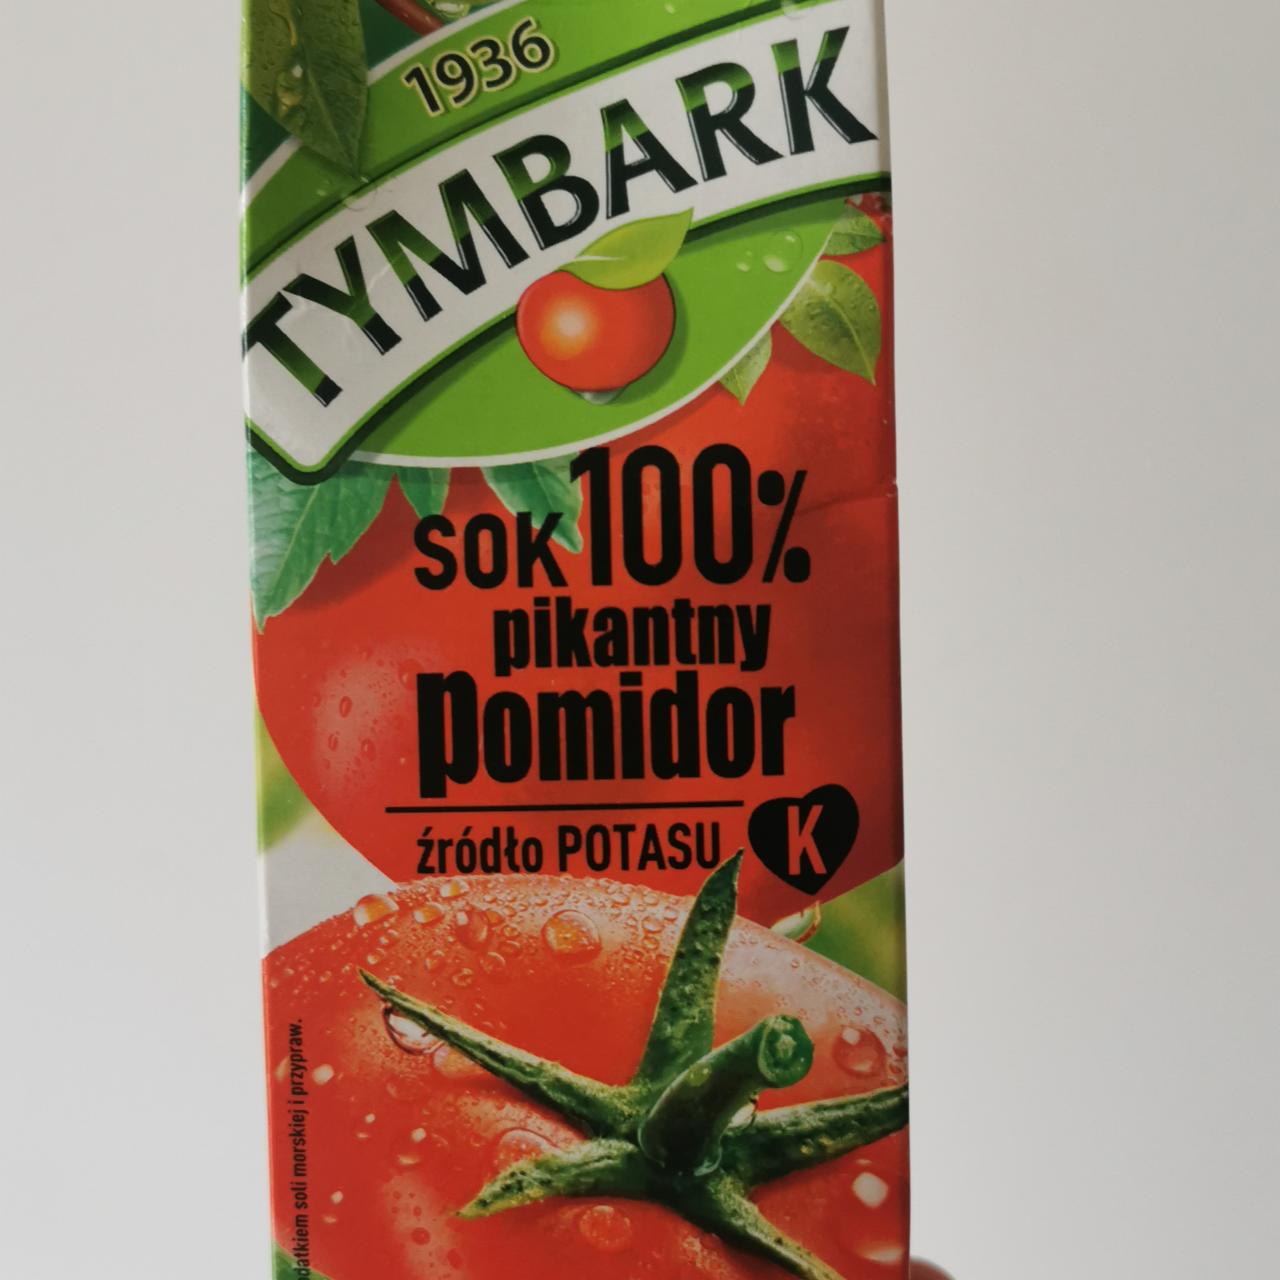 Zdjęcia - Sok 100 % pikantny pomidor Tymbark